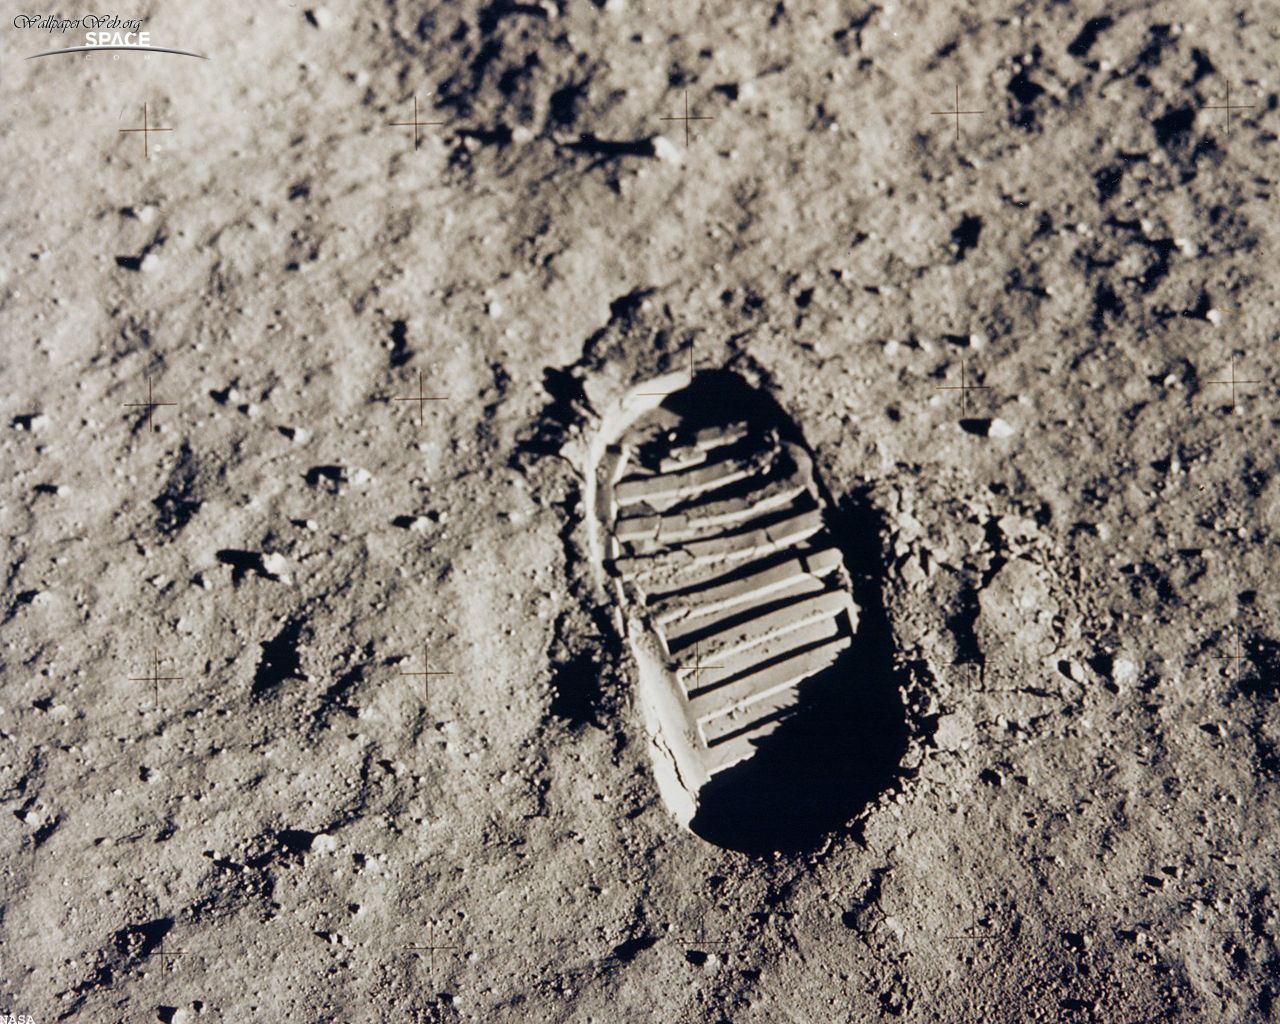 Space Apollo 11 - Foot, desktop wallpaper nr. 26536